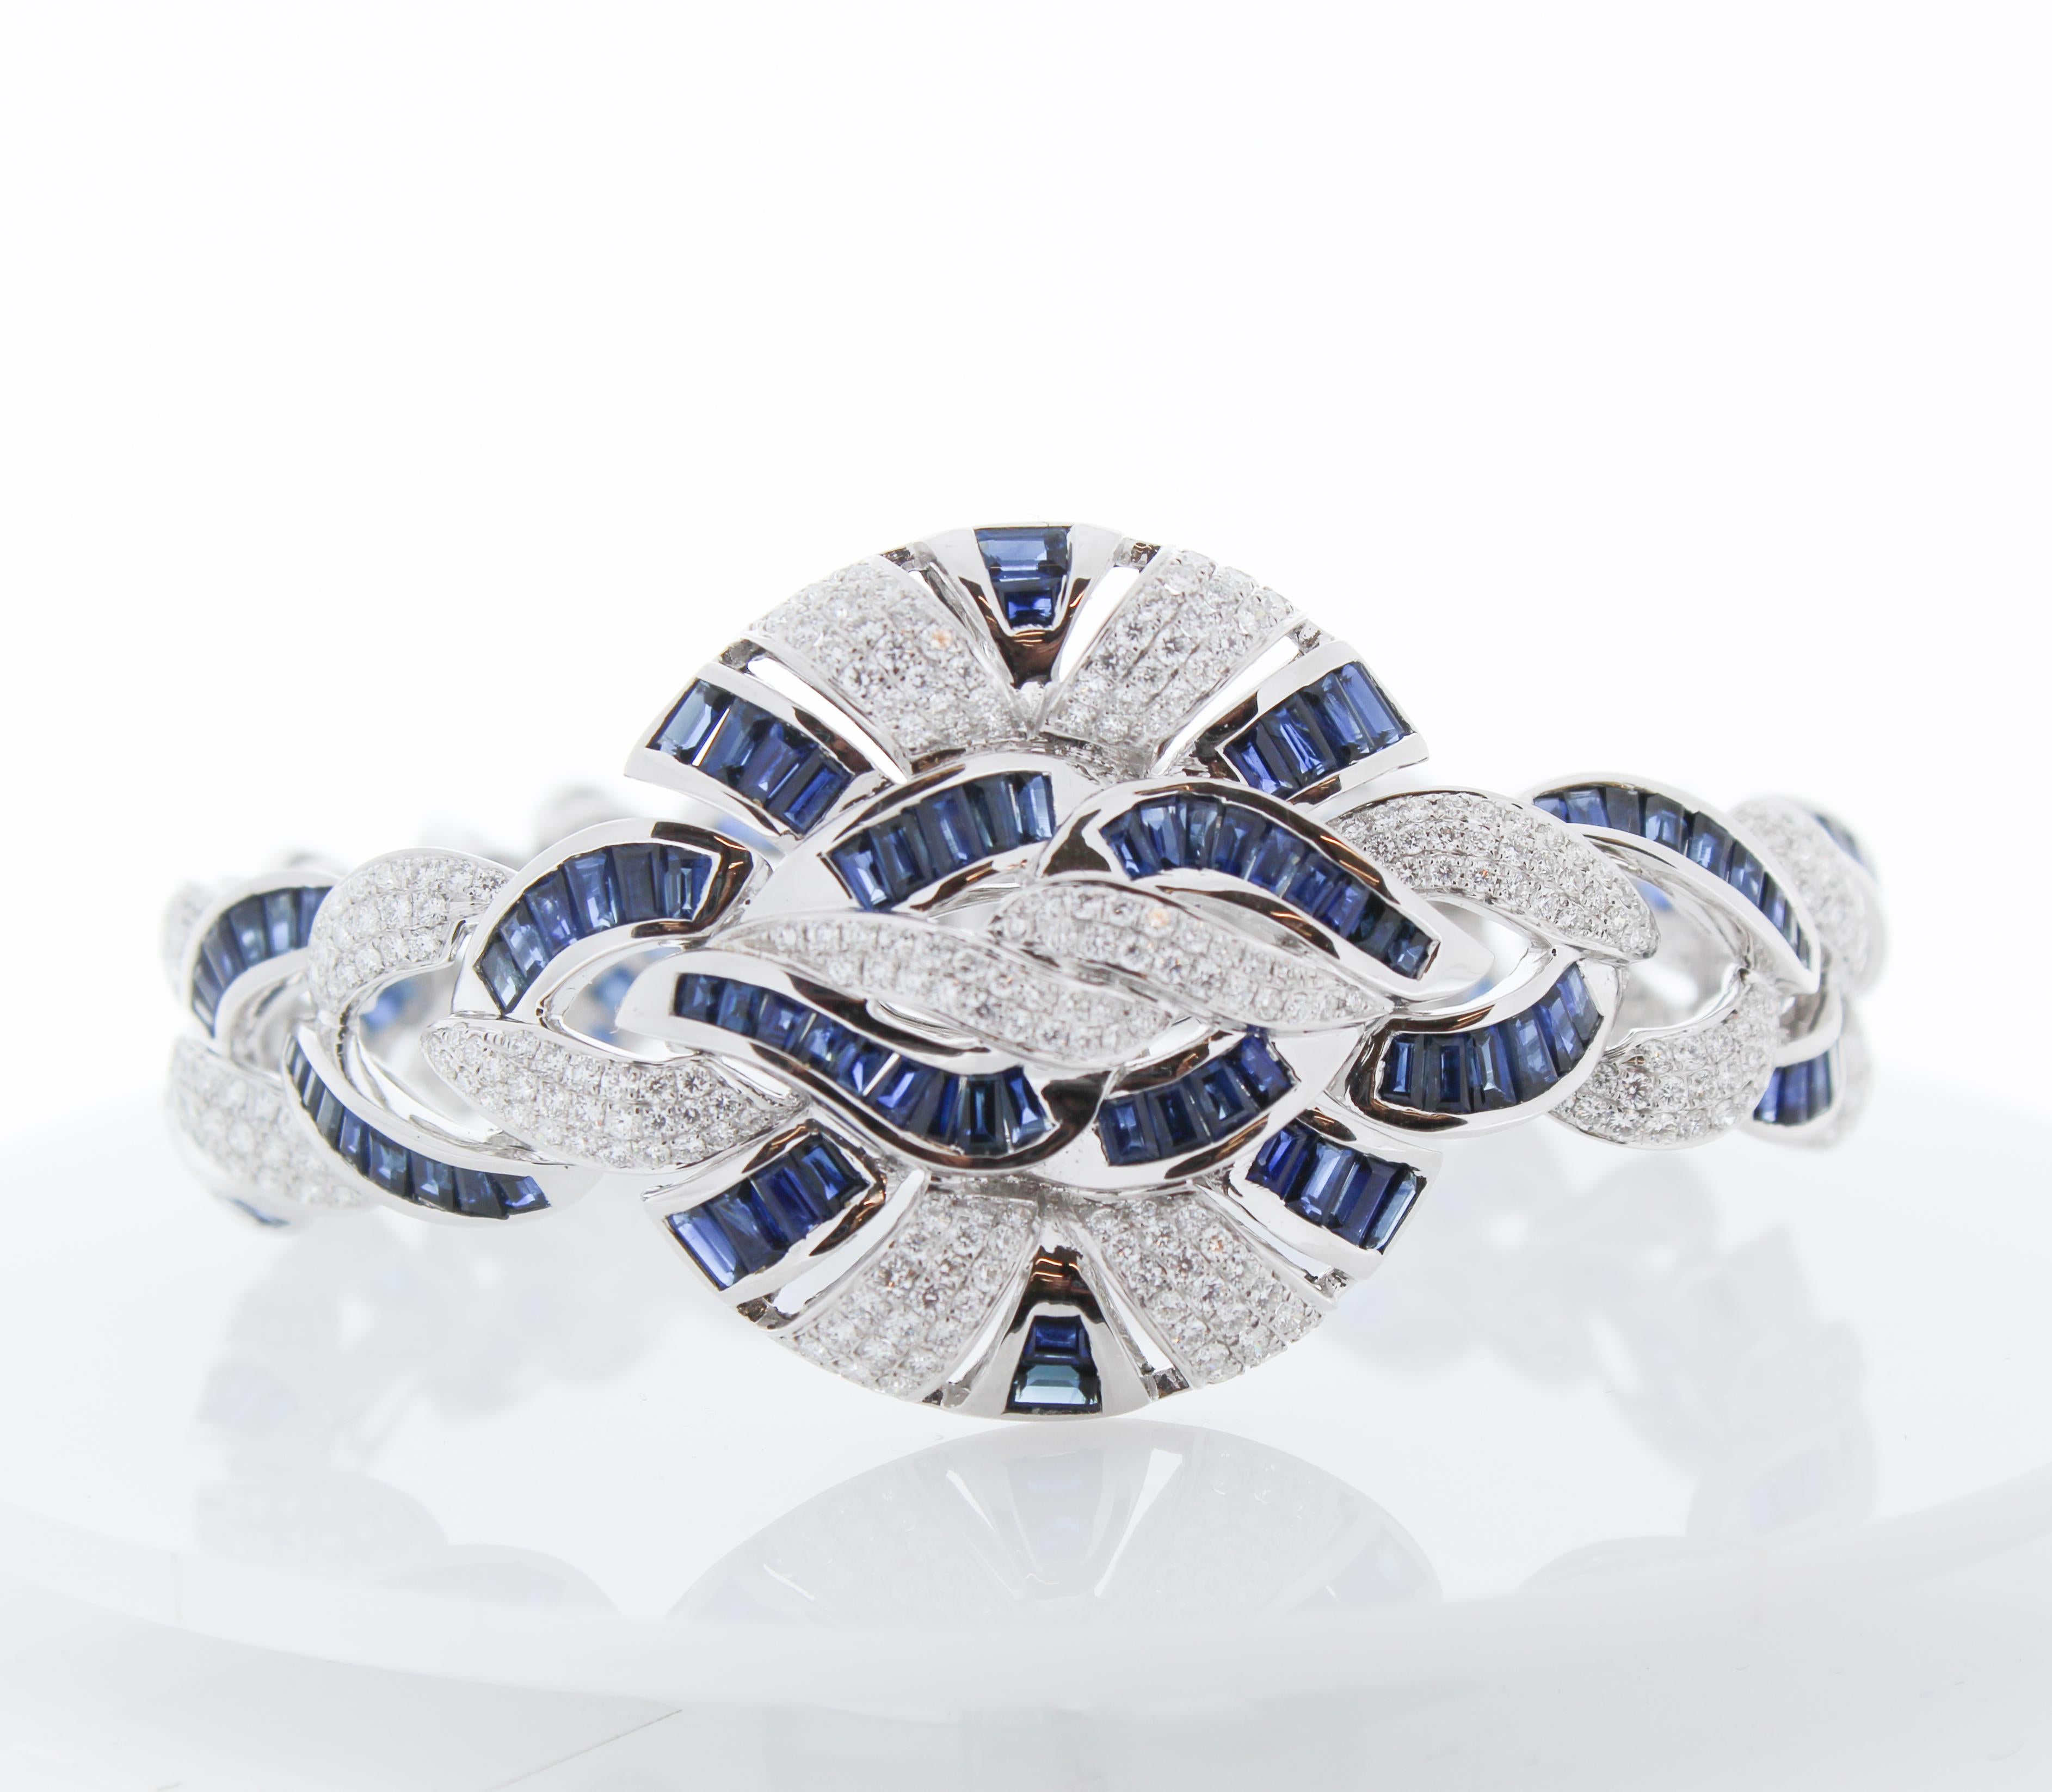 Ce bracelet décoratif de style Art déco comporte 17 tanzanites de taille ovale pour un total de 21,67 carats. La source de la pierre précieuse se trouve près des contreforts du mont Kilimandjaro en Tanzanie ; la suite est parfaitement assortie en